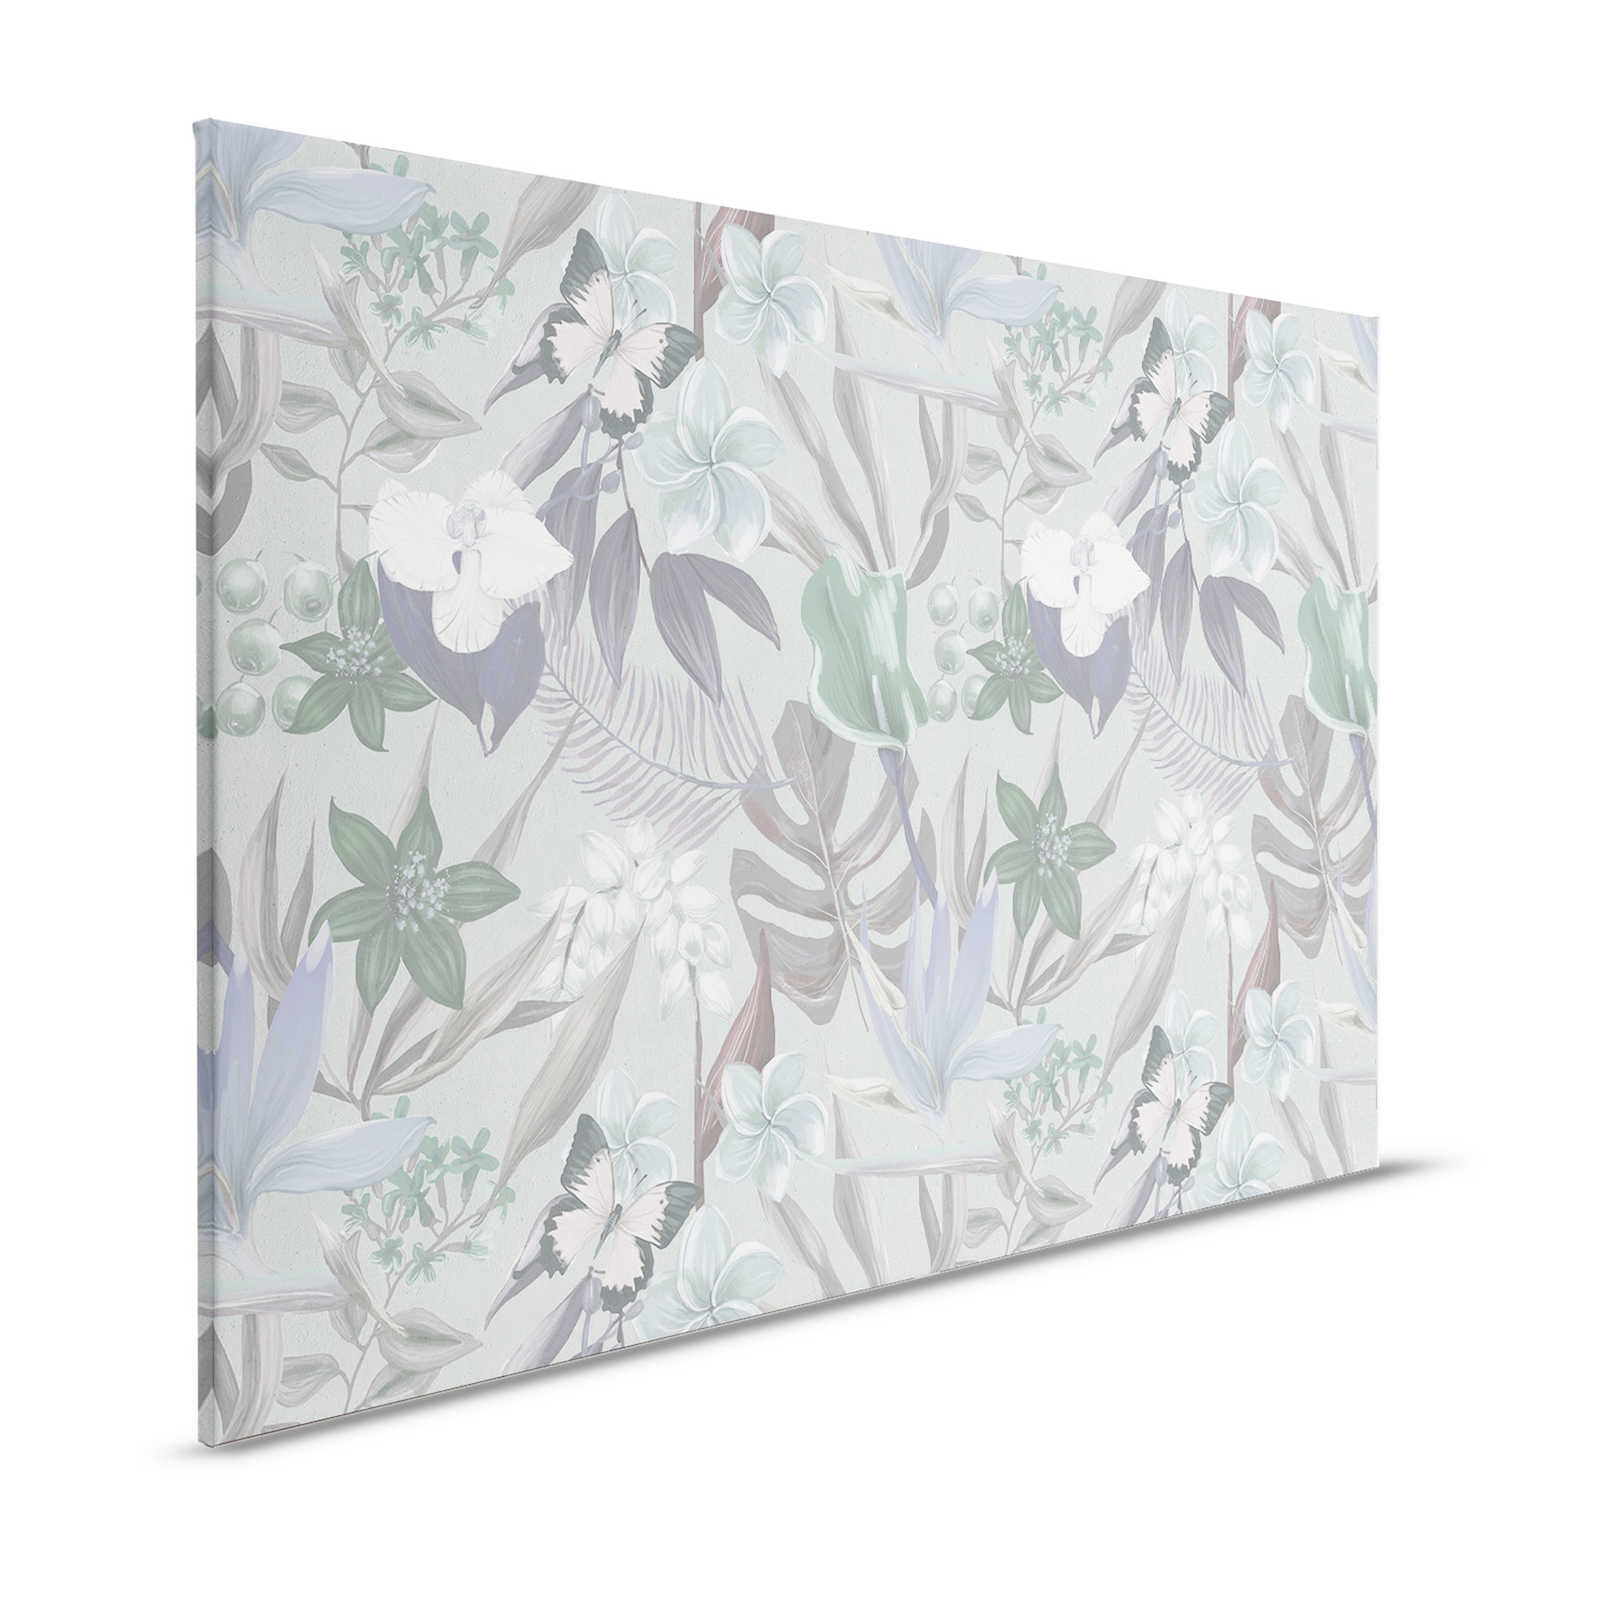 Florales Dschungel Leinwandbild gezeichnet | grün, weiß – 1,20 m x 0,80 m
